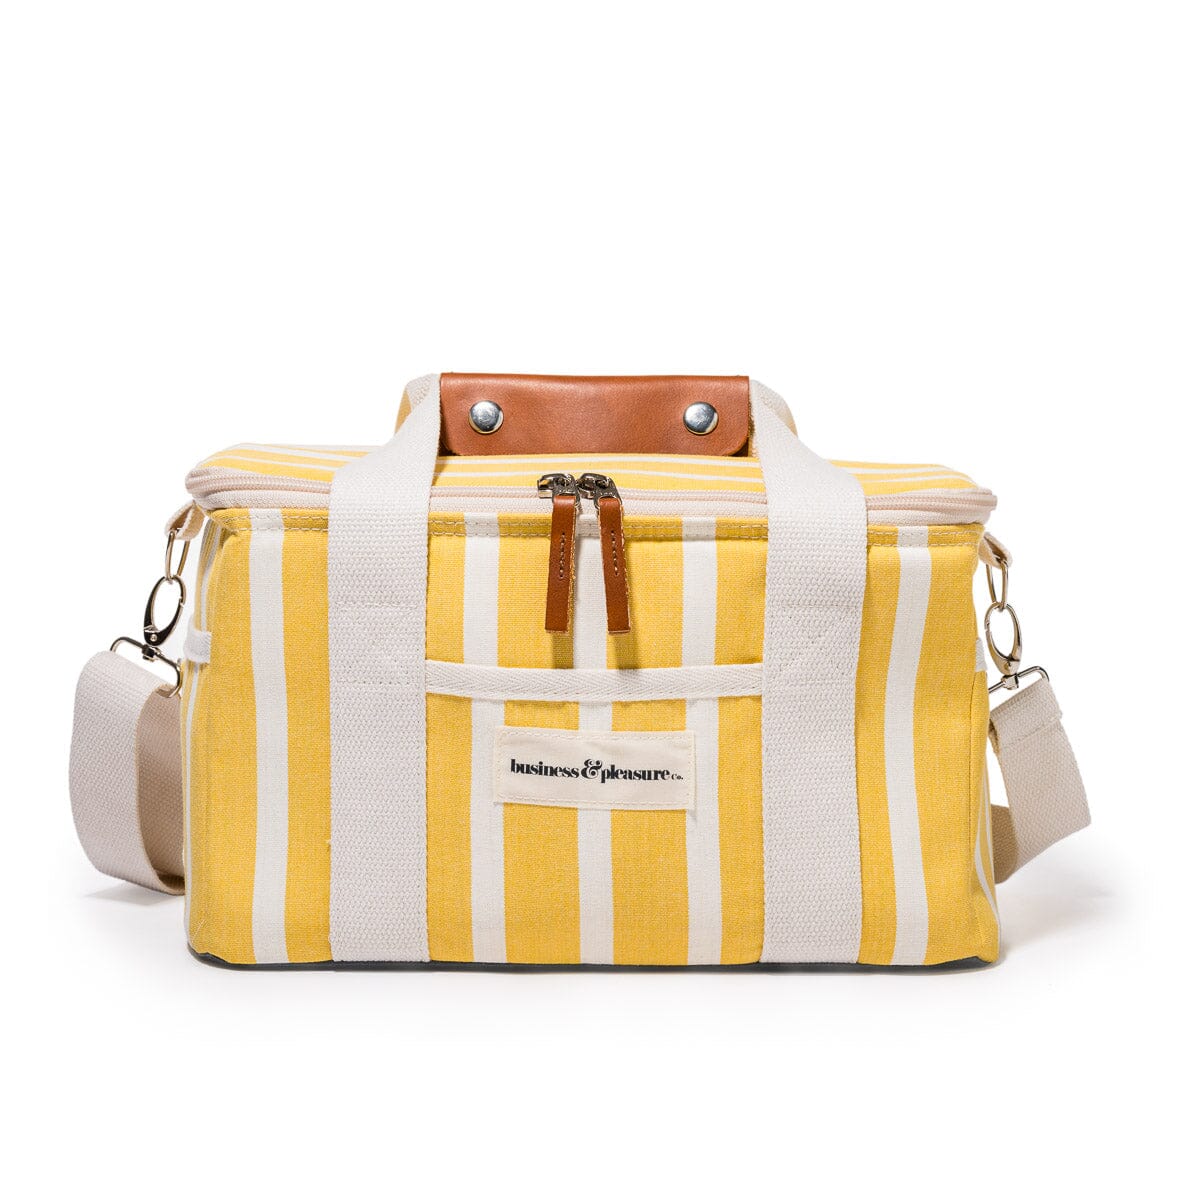 The Premium Cooler Bag - Monaco Mimosa Stripe Premium Cooler Business & Pleasure Co Aus 